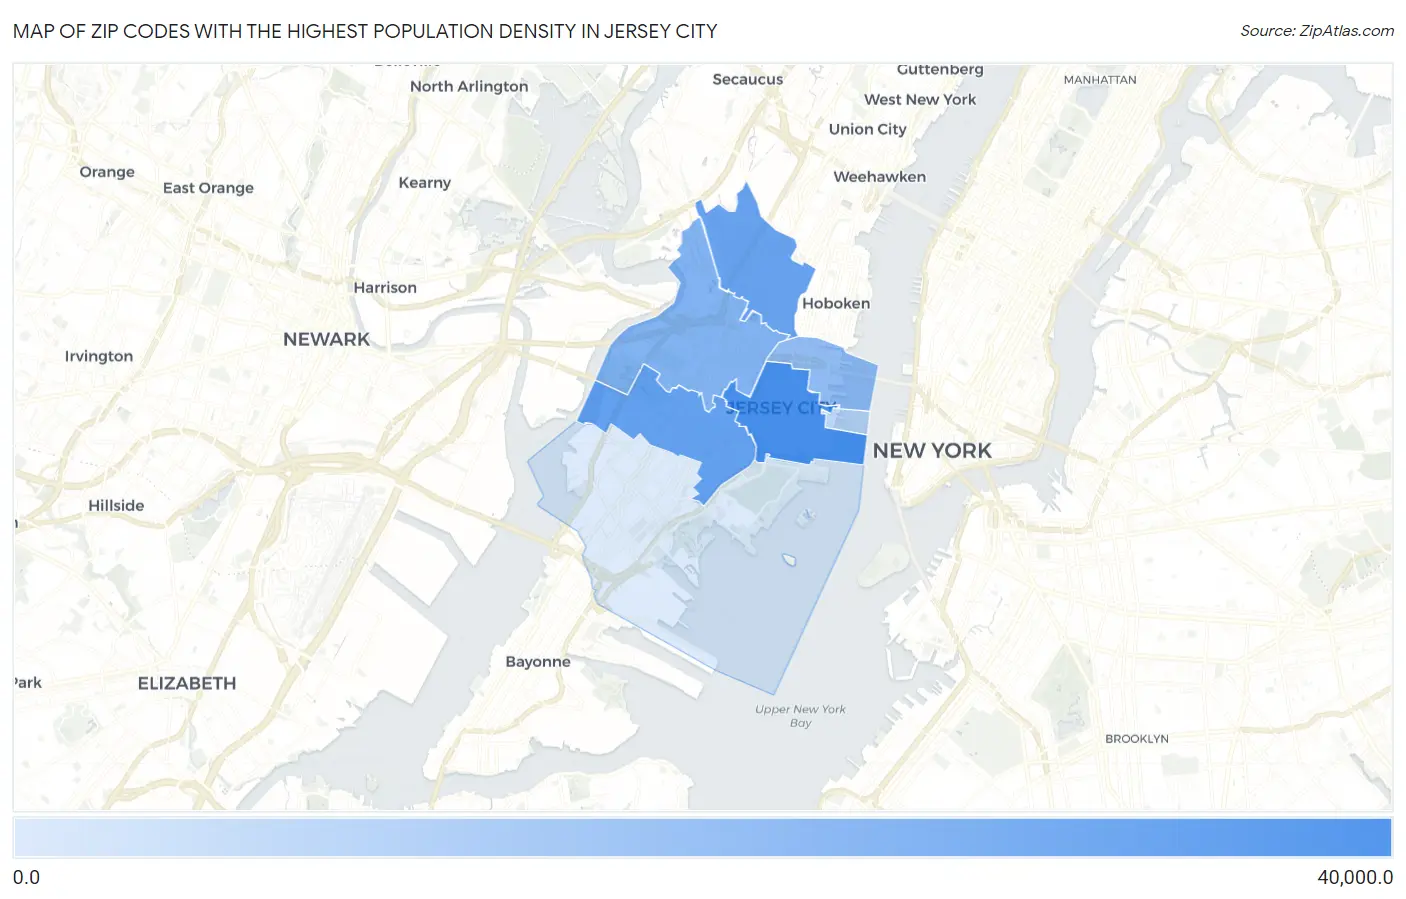 Highest Population Density in Jersey City by Zip Code | Zip Atlas